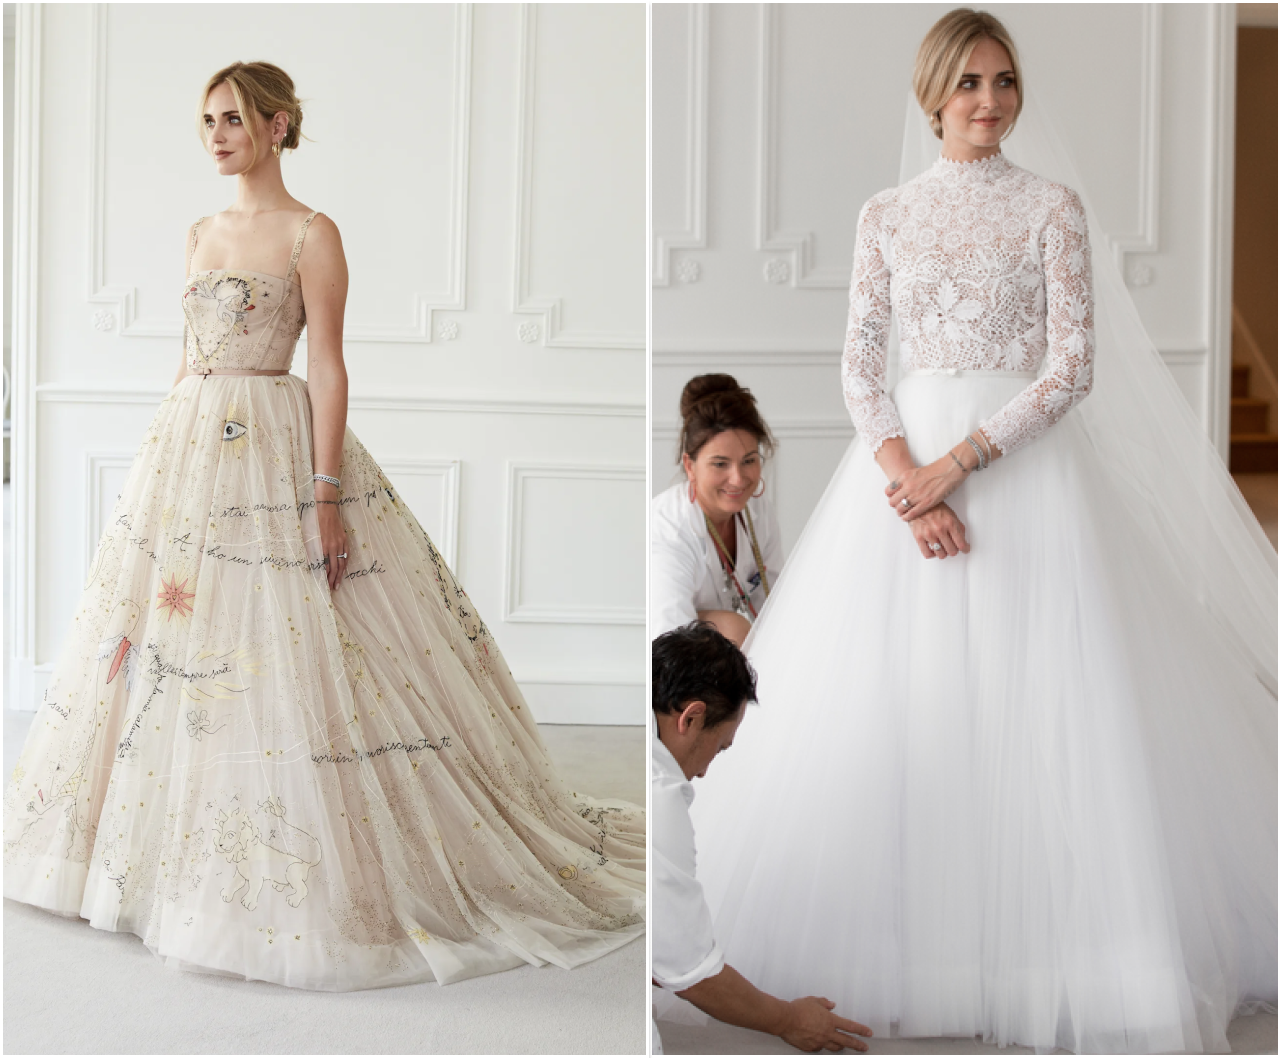 Váy cưới của các cô dâu Dior: Song Hye Kyo, Angelababy tạo cú nổ truyền thông - Ảnh 7.